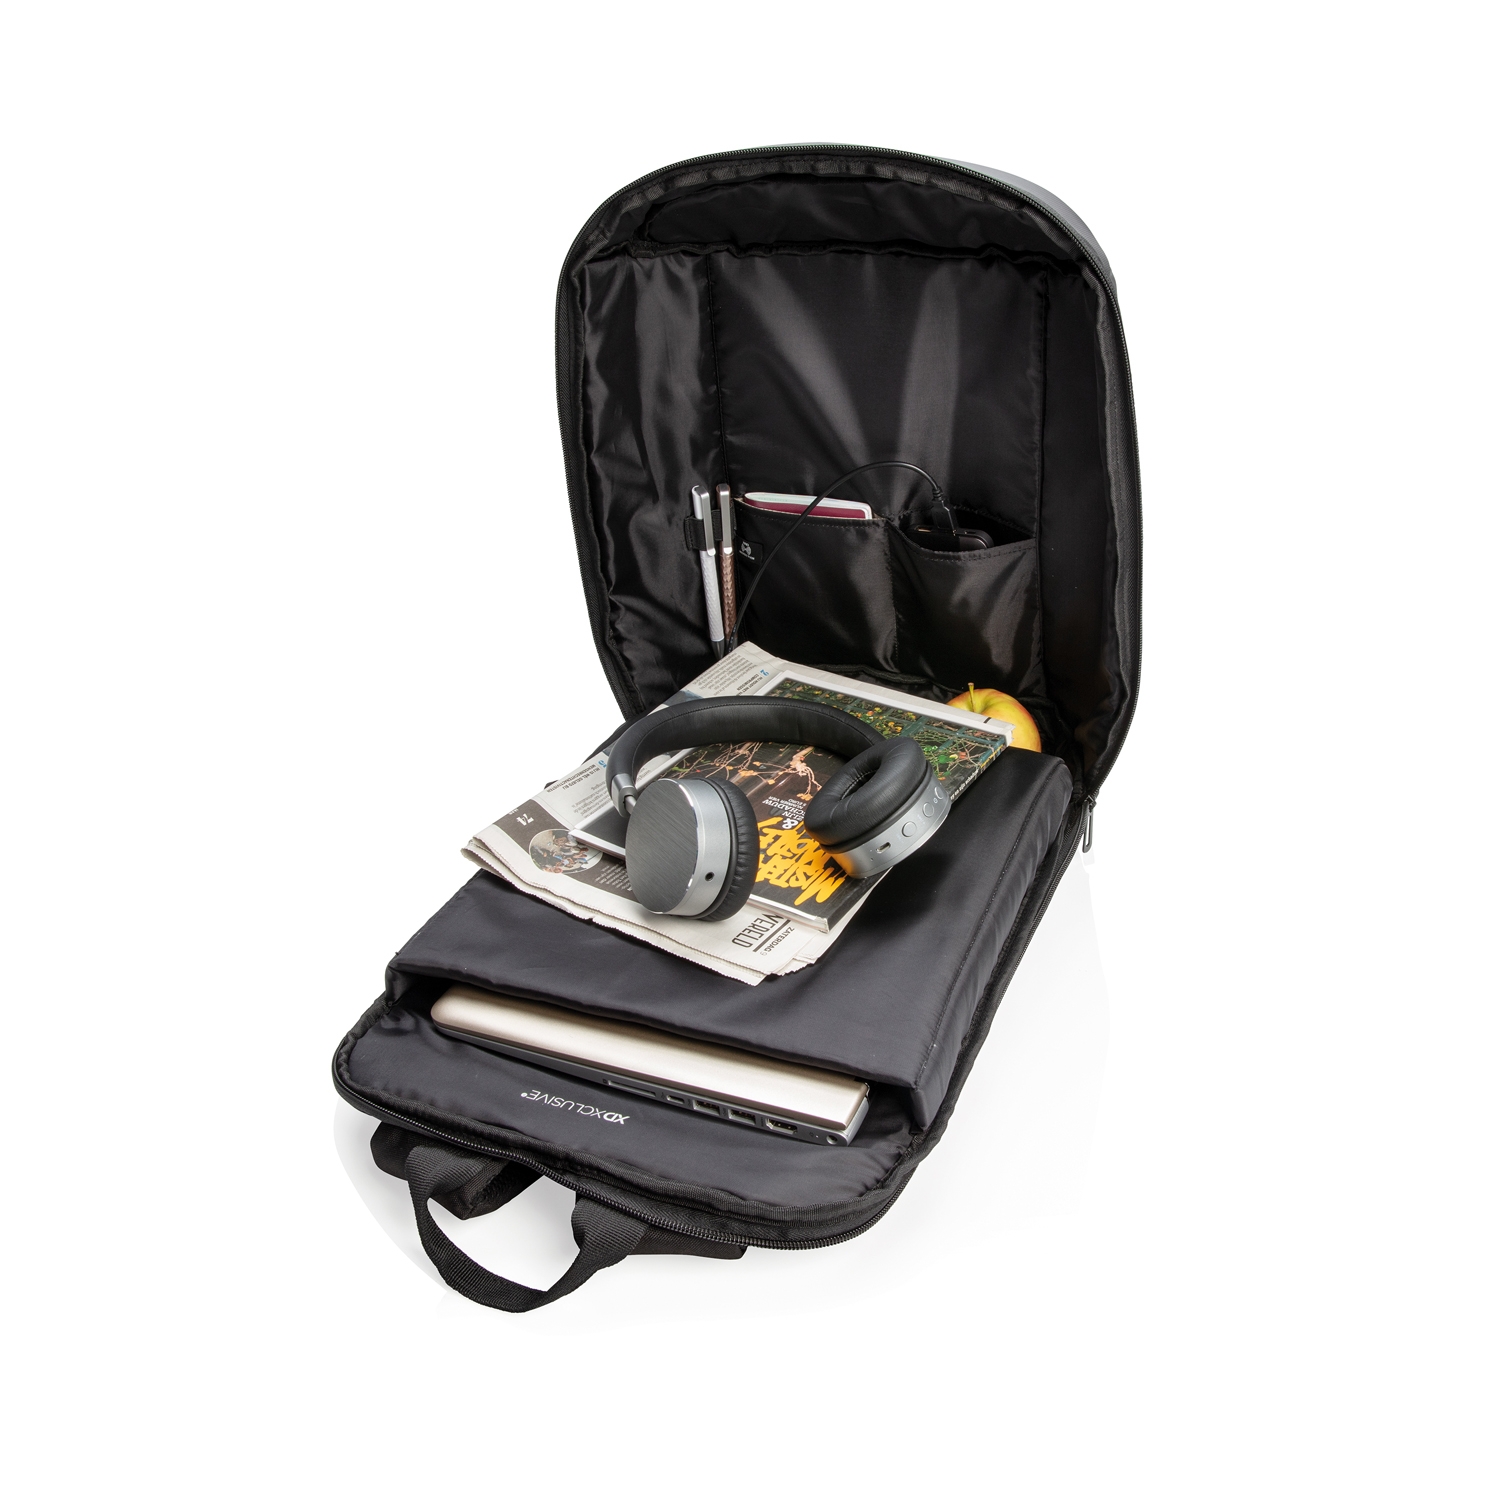 Антикражный рюкзак Madrid с разъемом USB и защитой RFID, черный, полиэстер; polyurethane